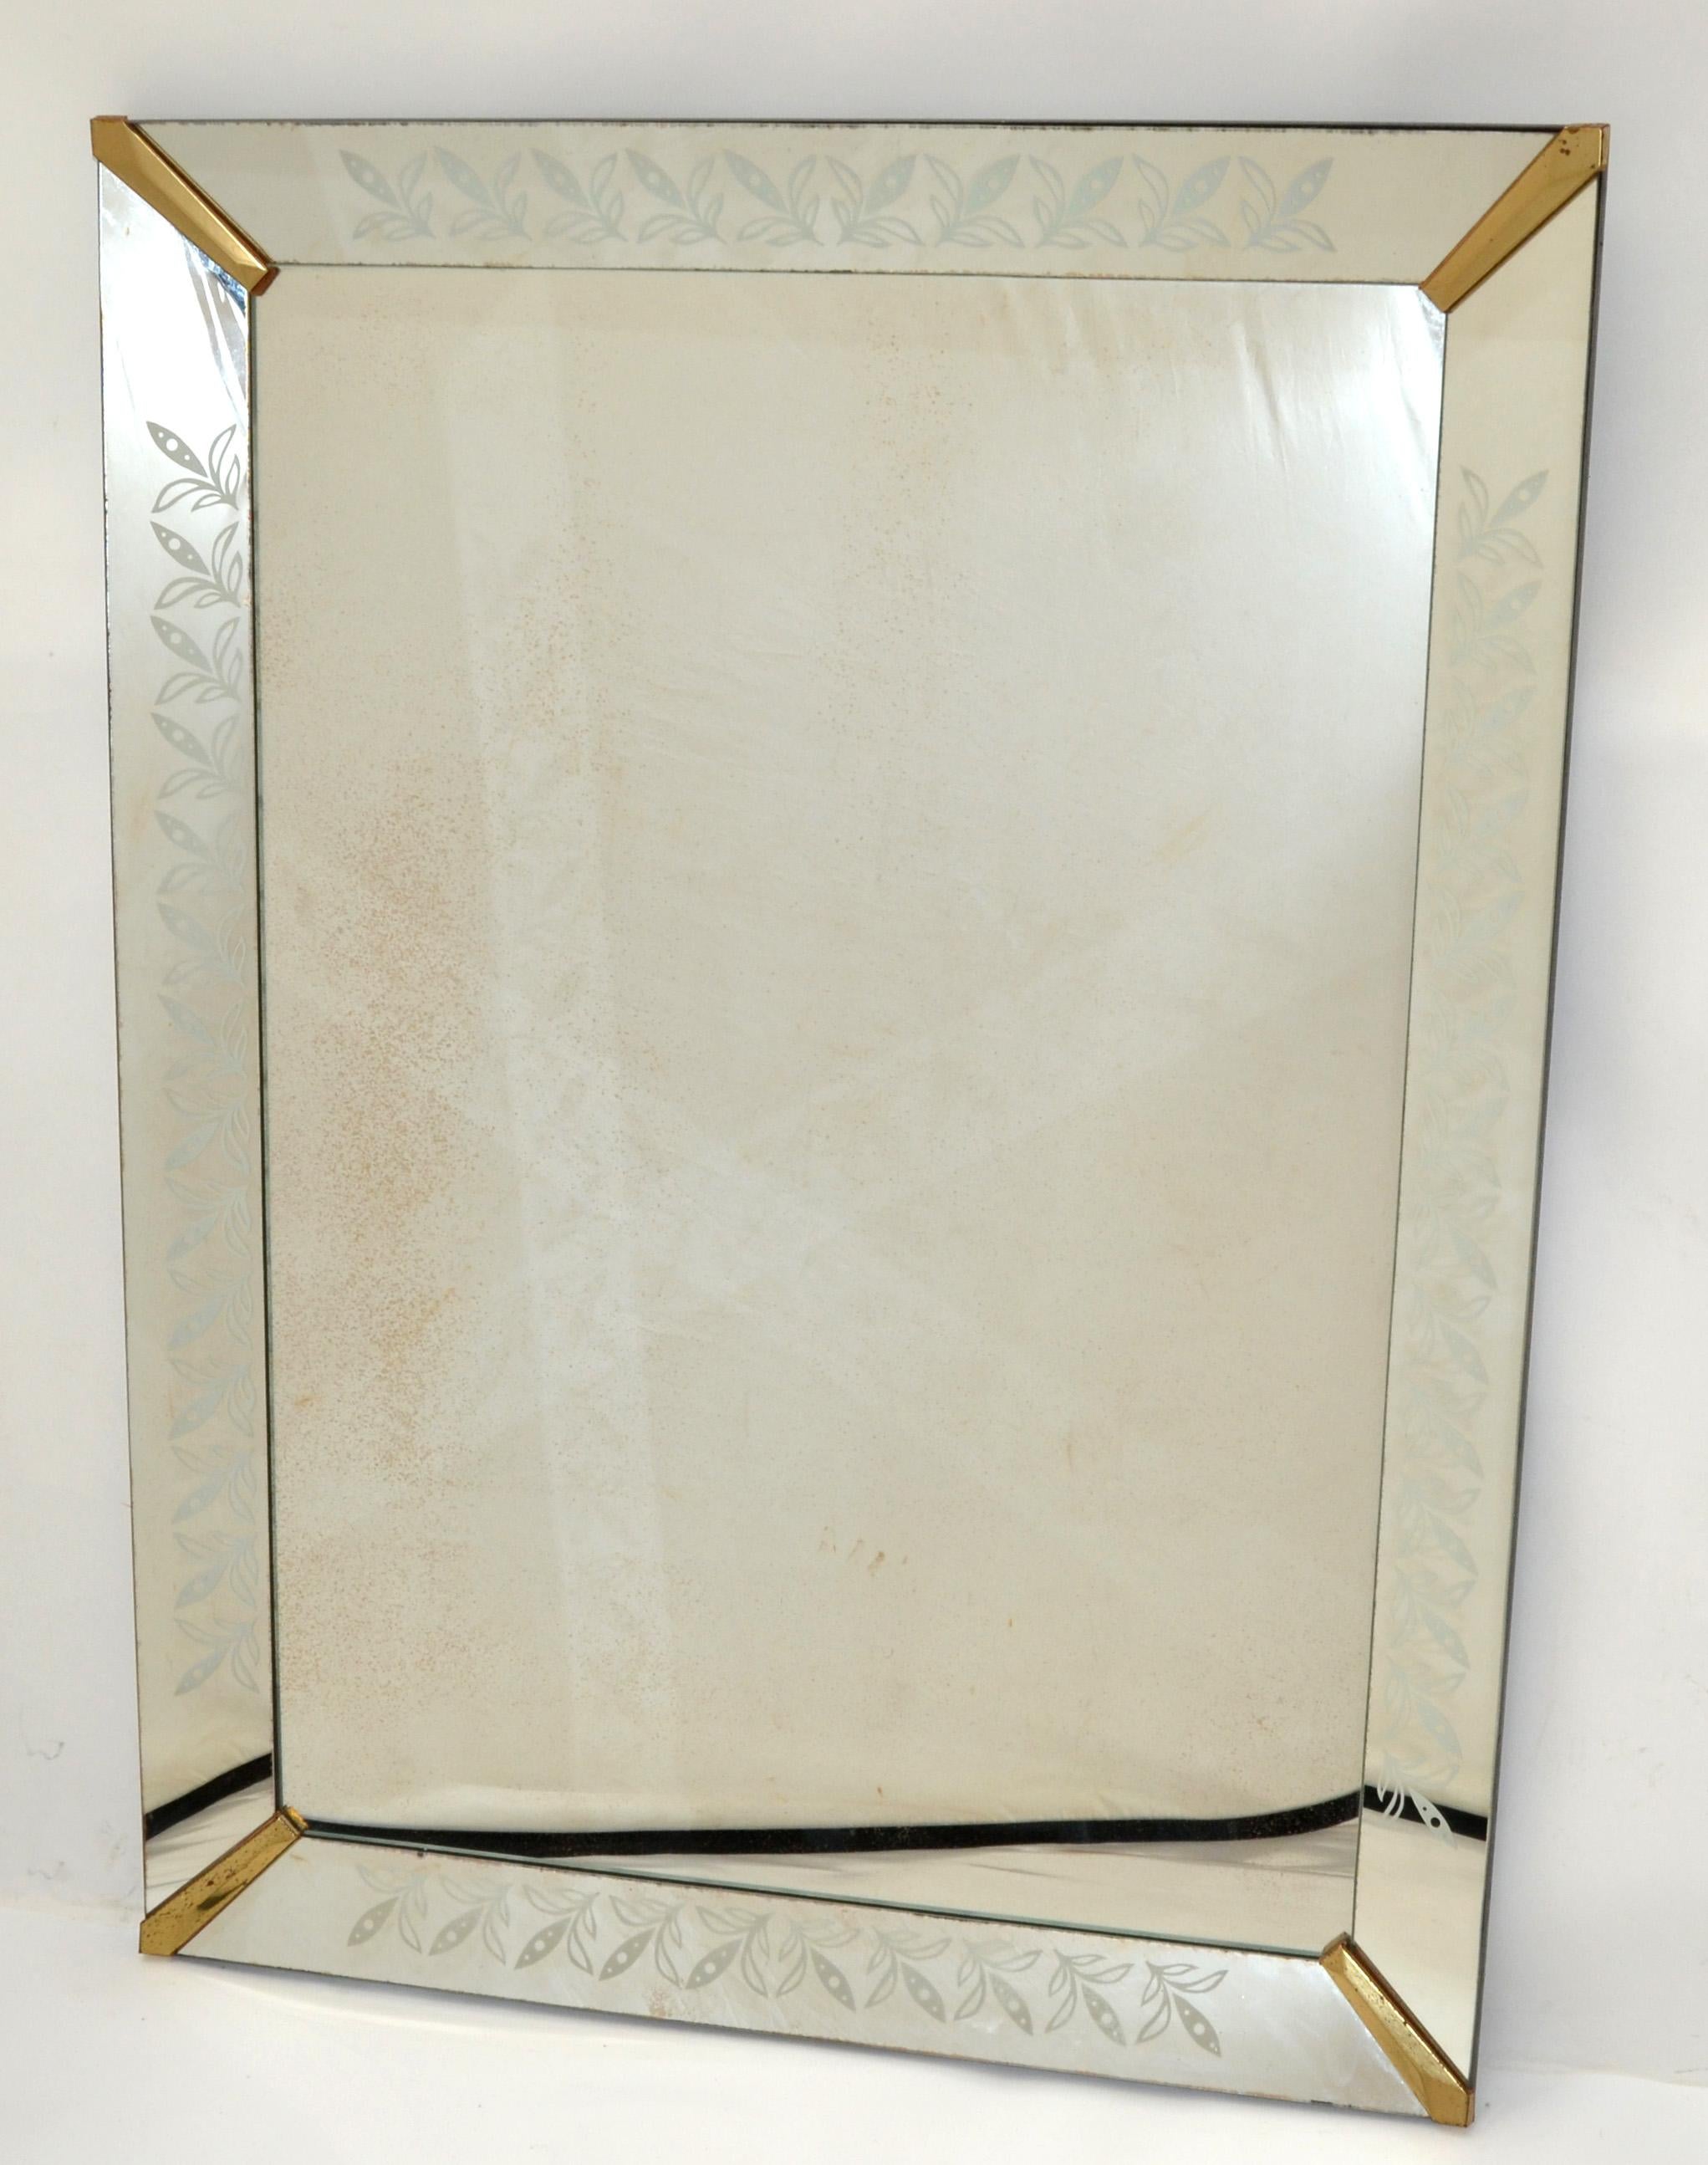 Miroir décoratif de style vénitien des années 1940 avec cadre en verre biseauté et coins en métal fini laiton. 
Les panneaux en verre ondulé sont gravés d'un décor floral.
Le miroir a un support en bois massif très lourd en finition noire.
Peut